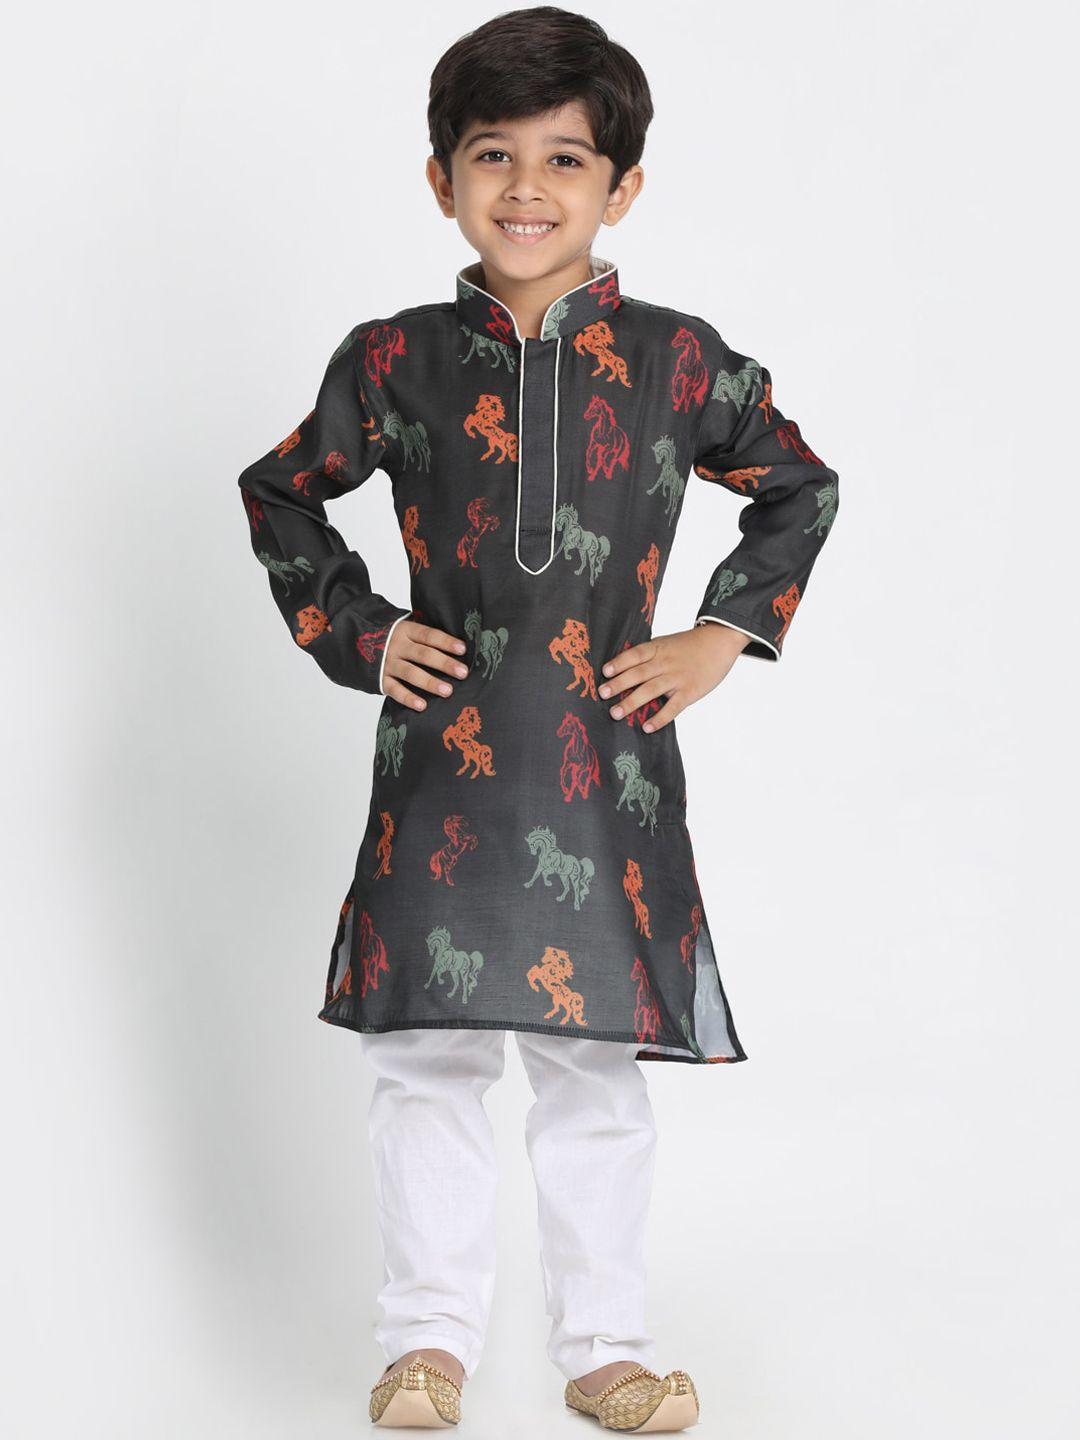 jbn creation boys black floral printed kurta with pyjamas